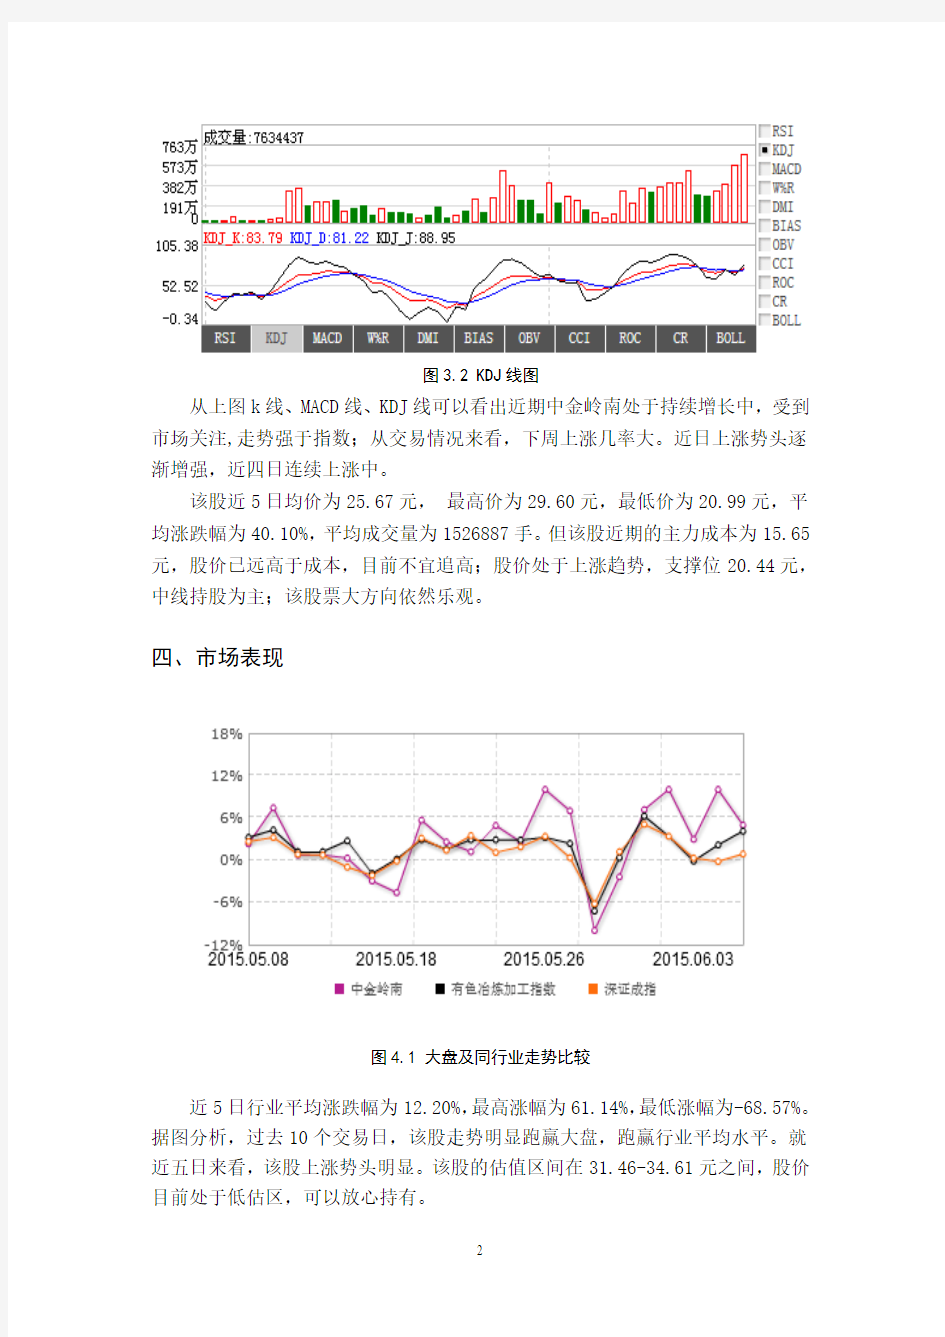 中金岭南投资价值分析报告